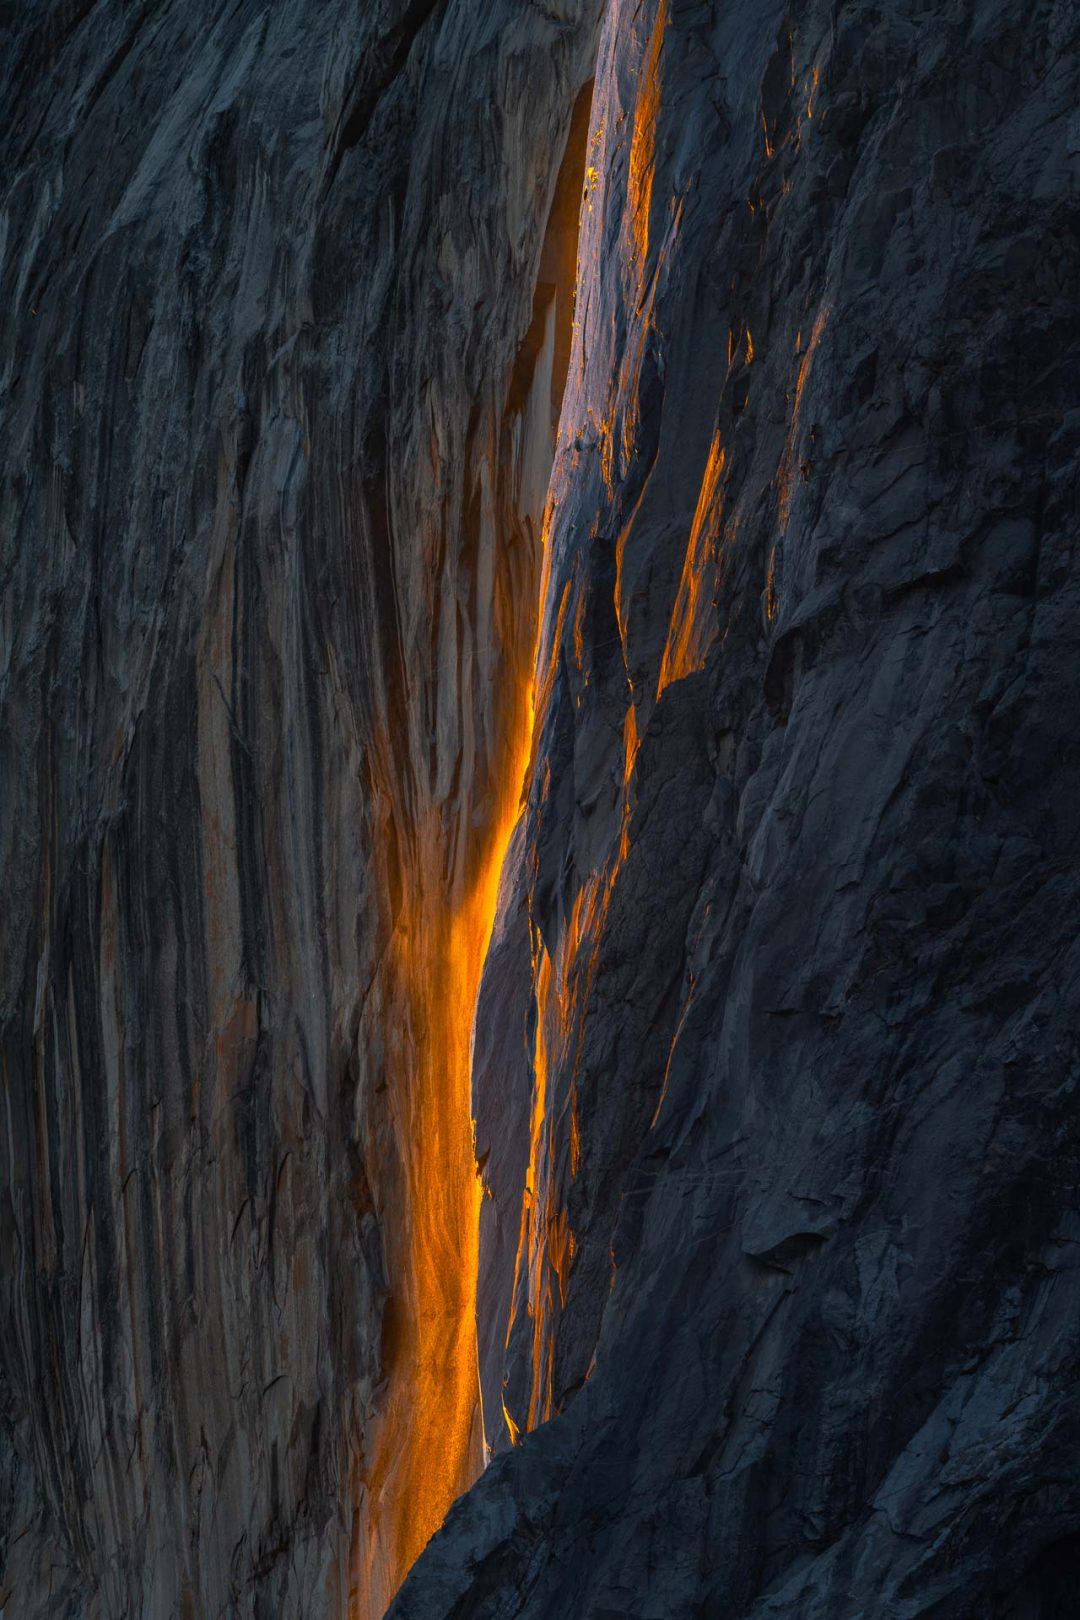 Lo spettacolo di Yosemite: ecco la bellissima cascata di fuoco “Horsetail Fall”